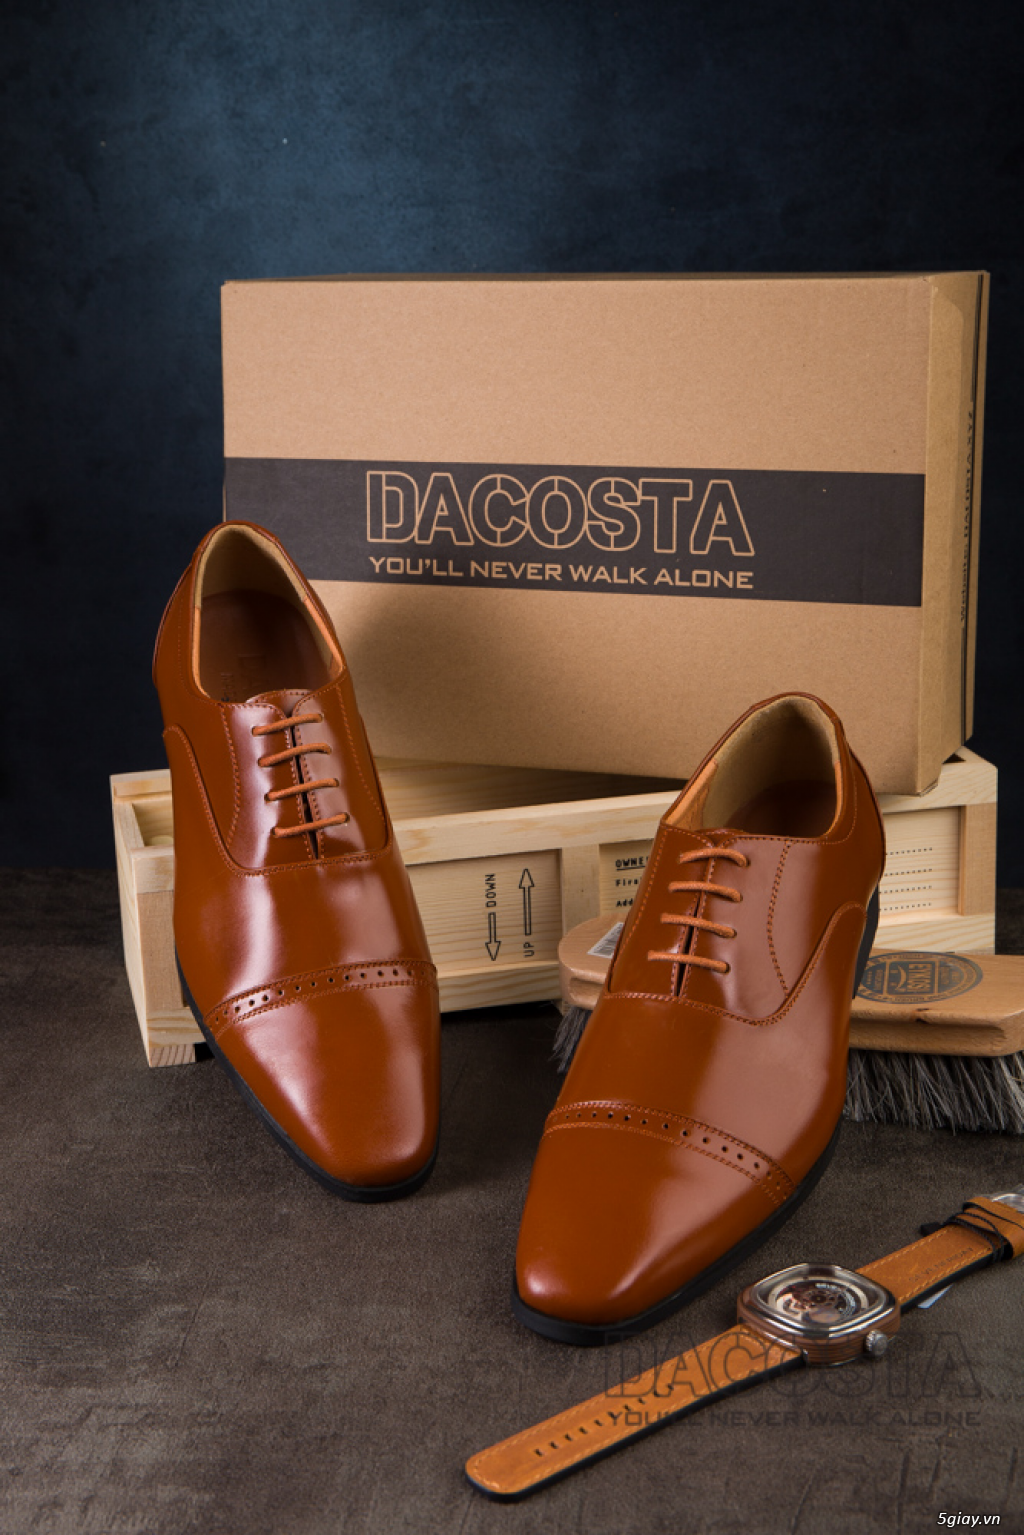 Tiệm Giày Dacosta - Những Mẫu Giày Tây Oxford Hot Nhất 2019 - 36